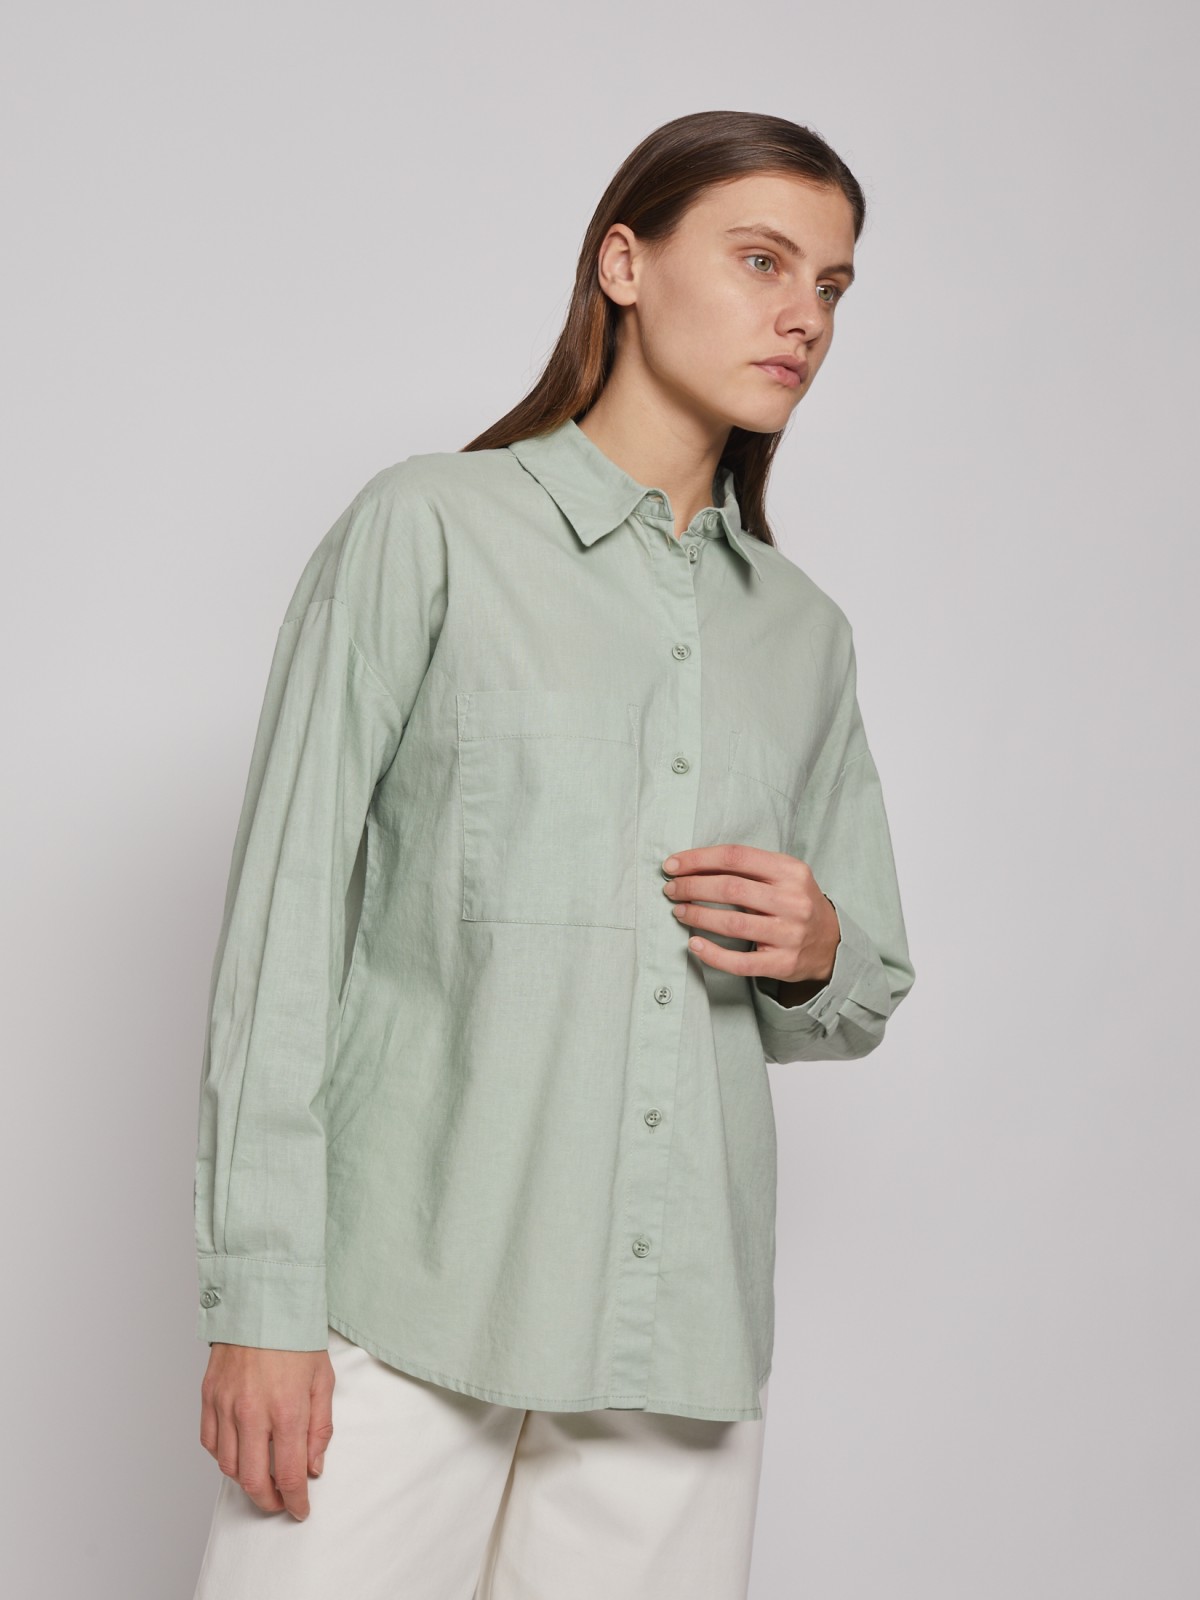 Рубашка с длинным рукавом zolla 022221191033, цвет светло-зеленый, размер XS - фото 4